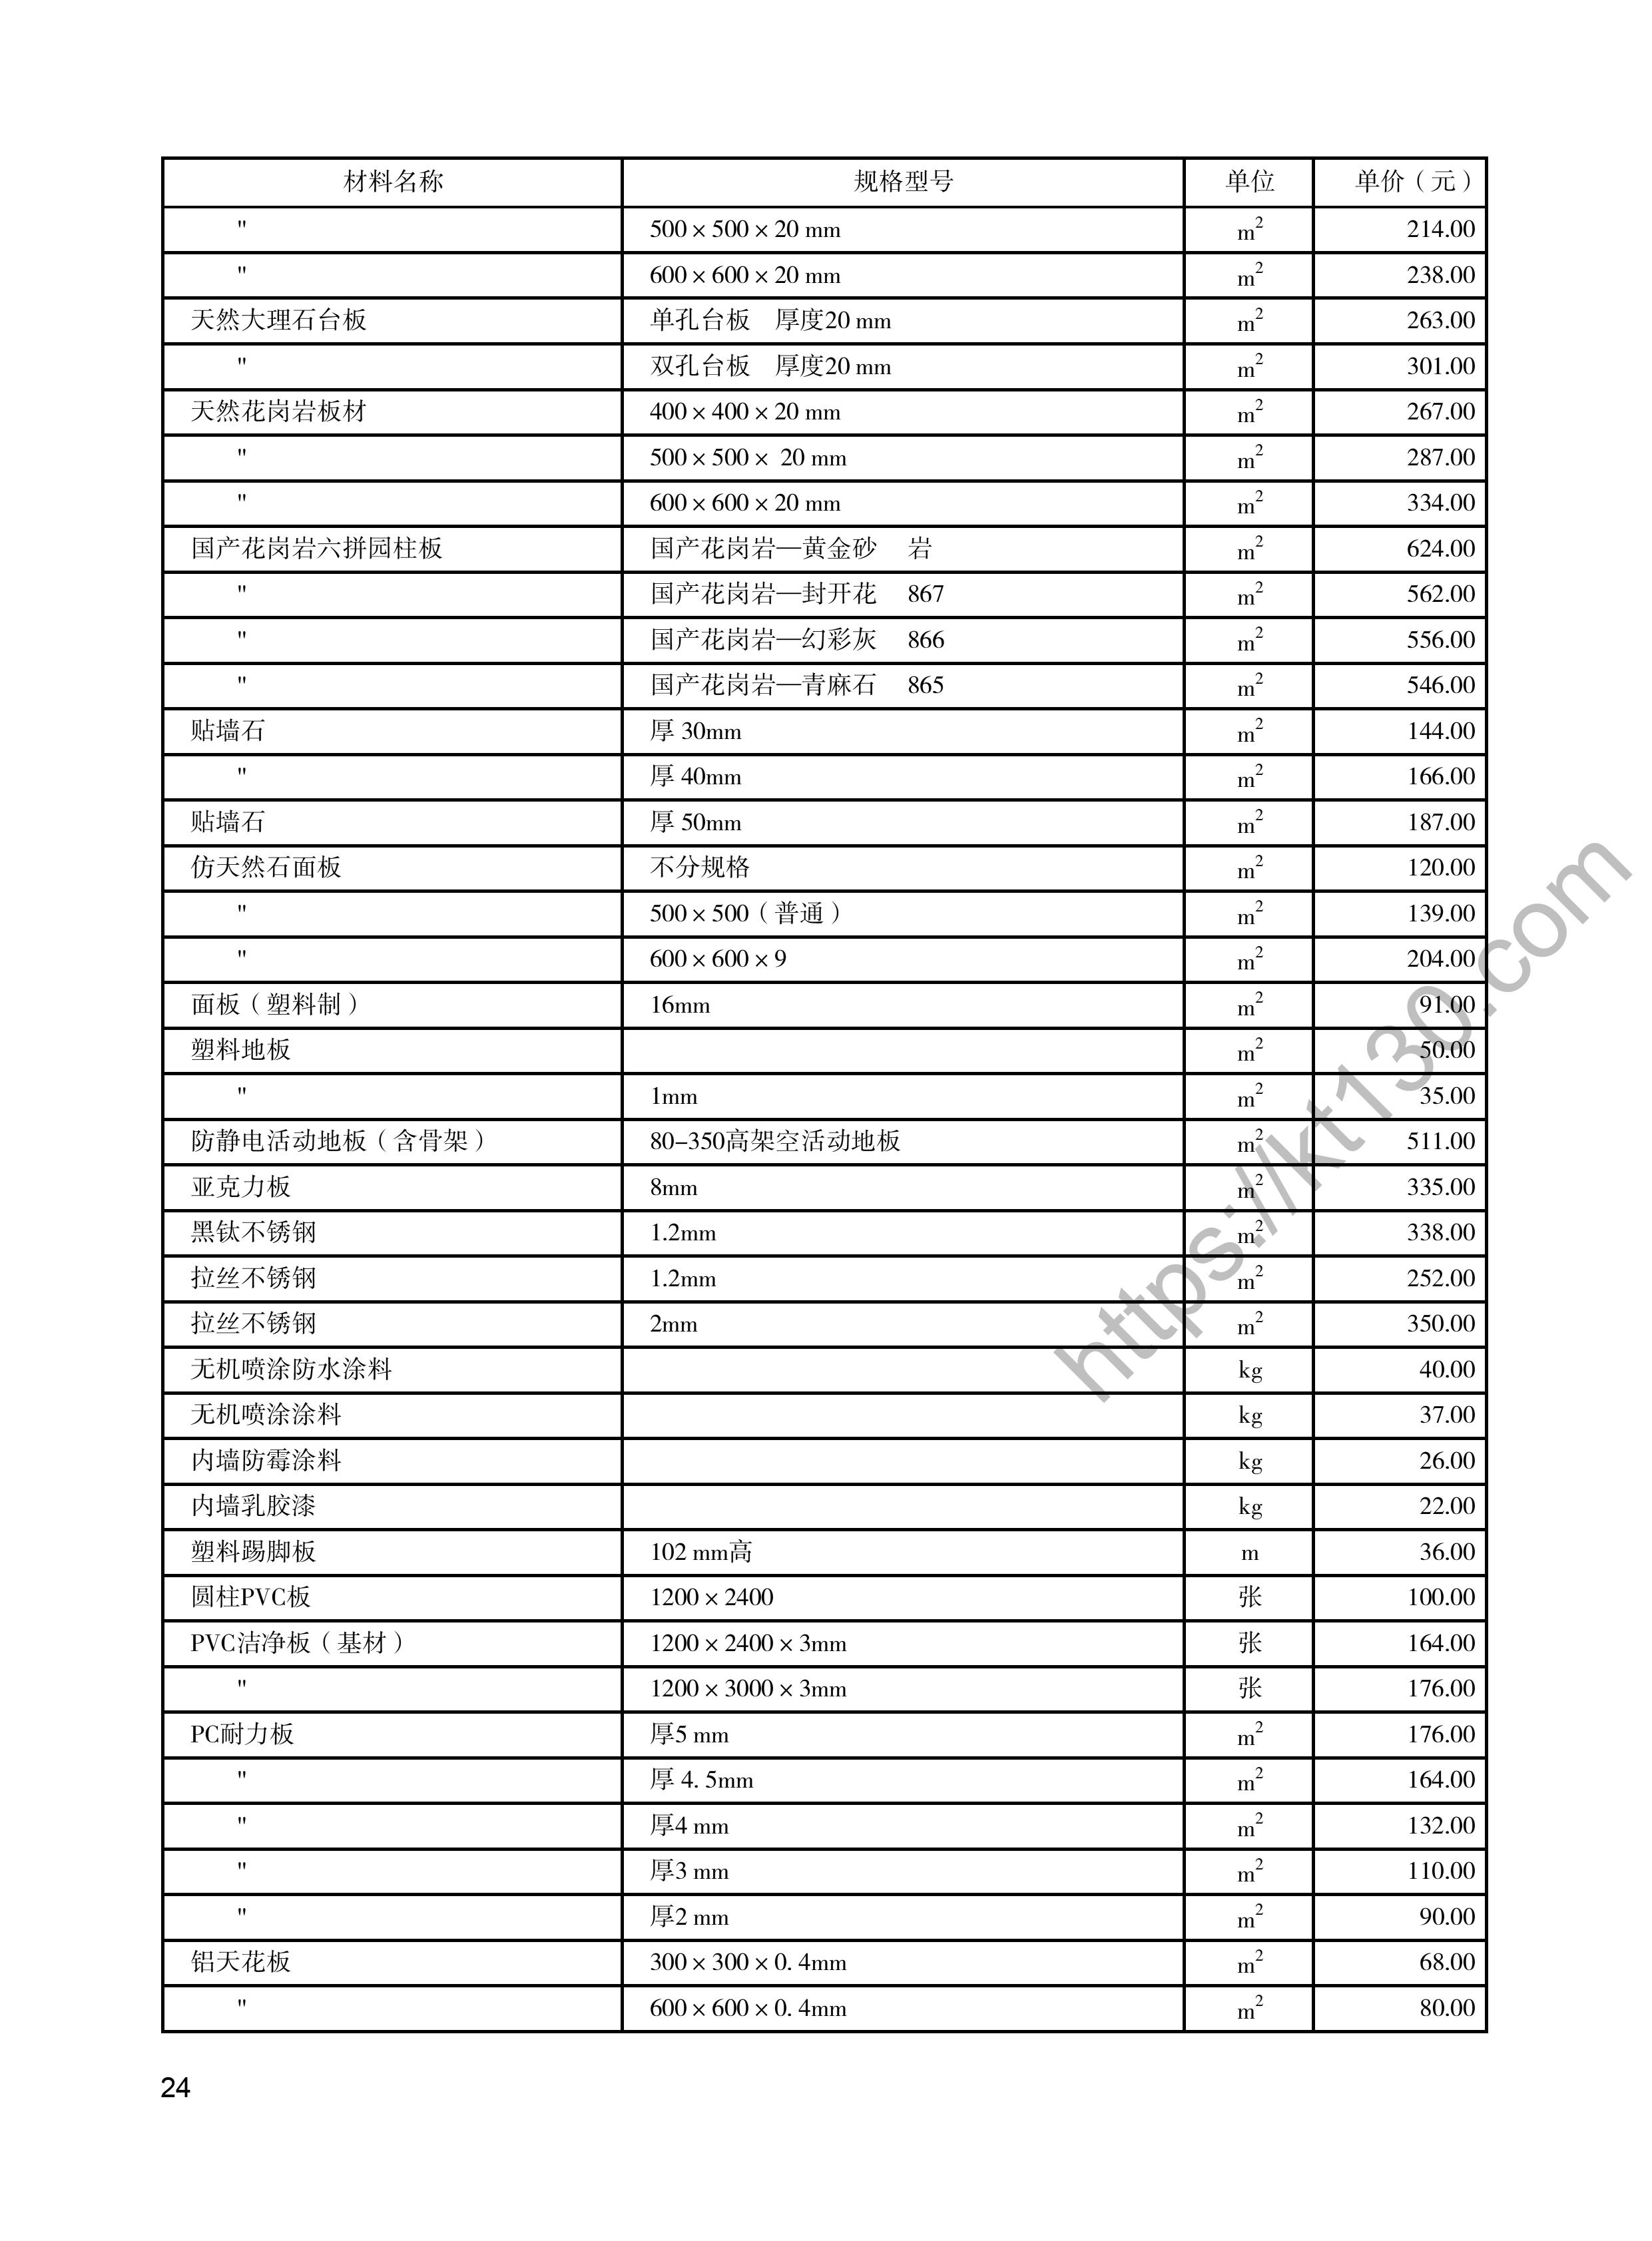 陕西省2022年5月建筑材料价_装饰材料_48241